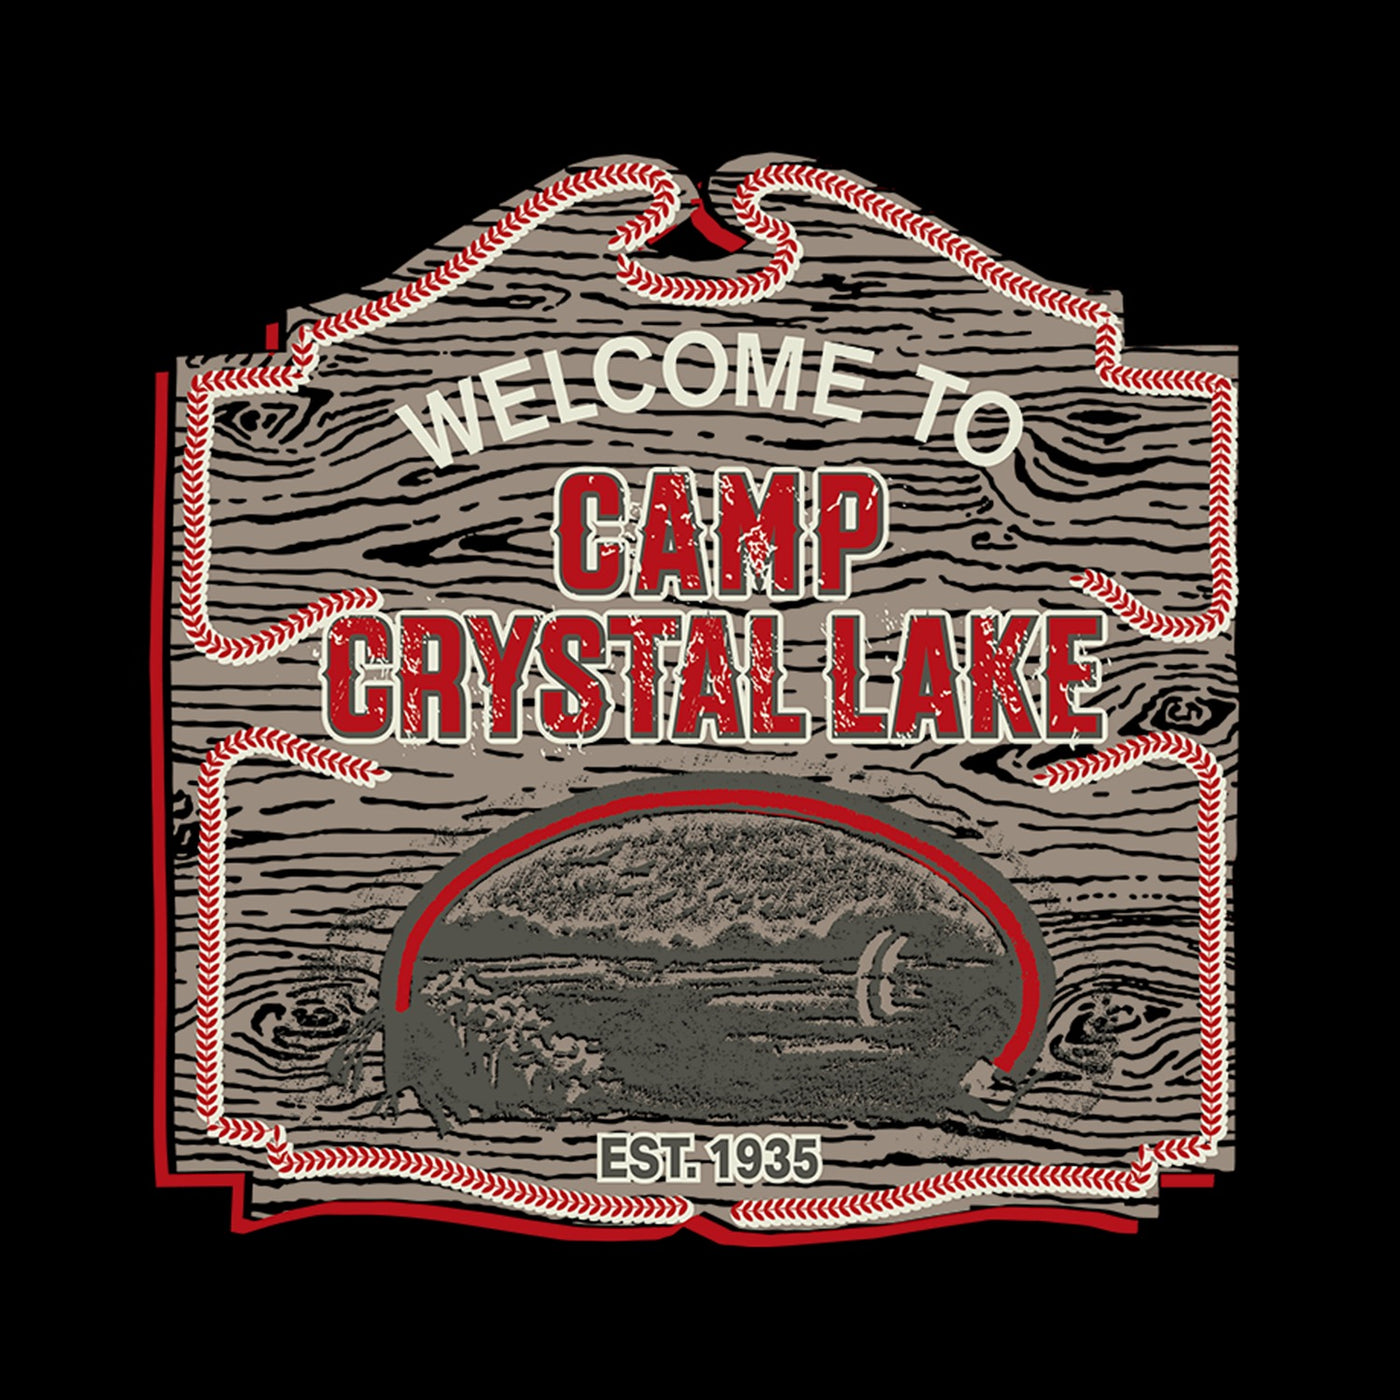 Friday The 13th Camp Crystal Lake Black Mug